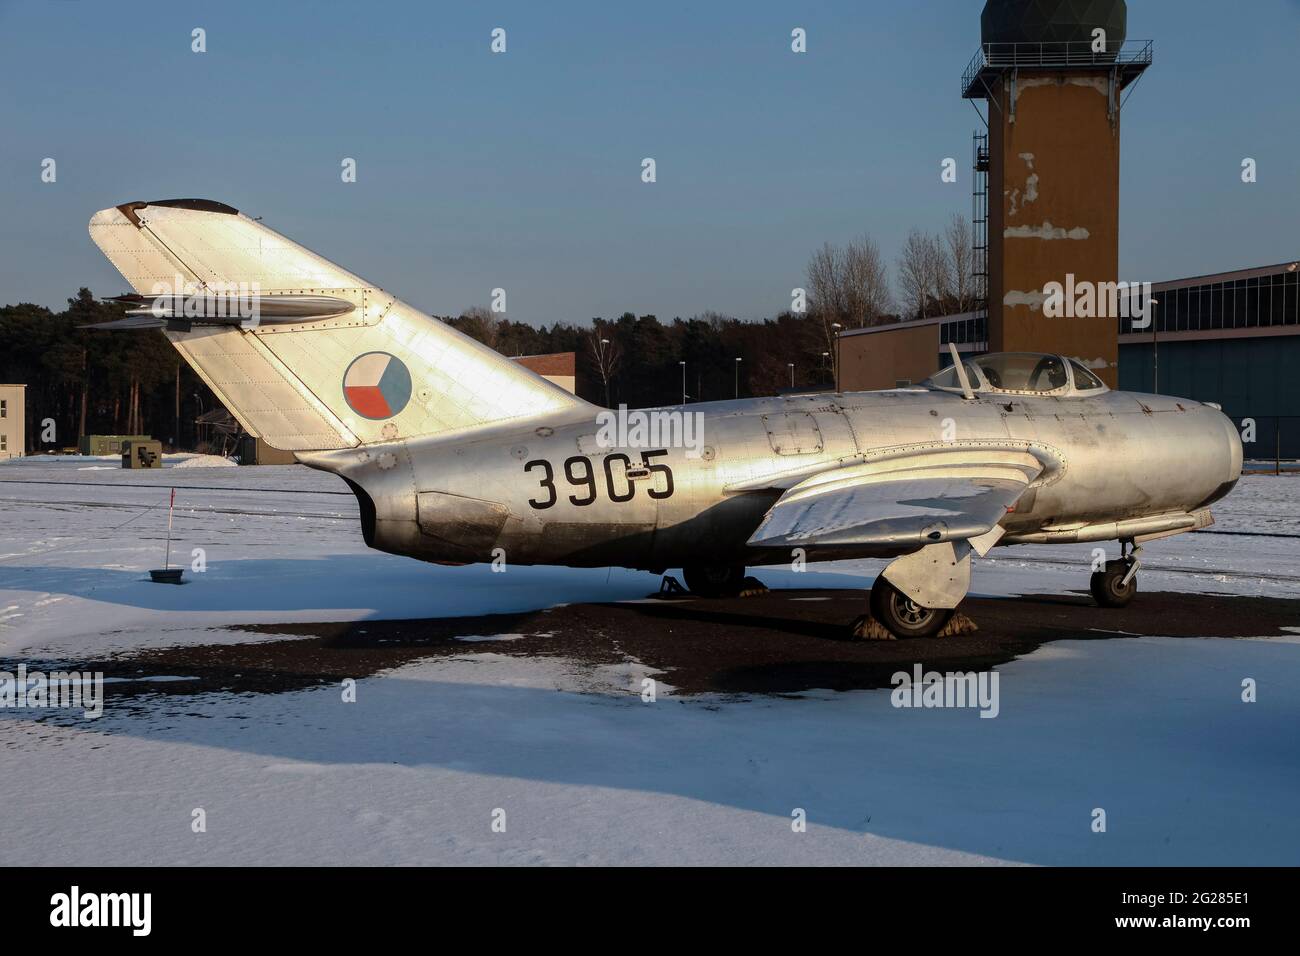 Una figota de la Fuerza Aérea Checa conservada MiG-15. Foto de stock